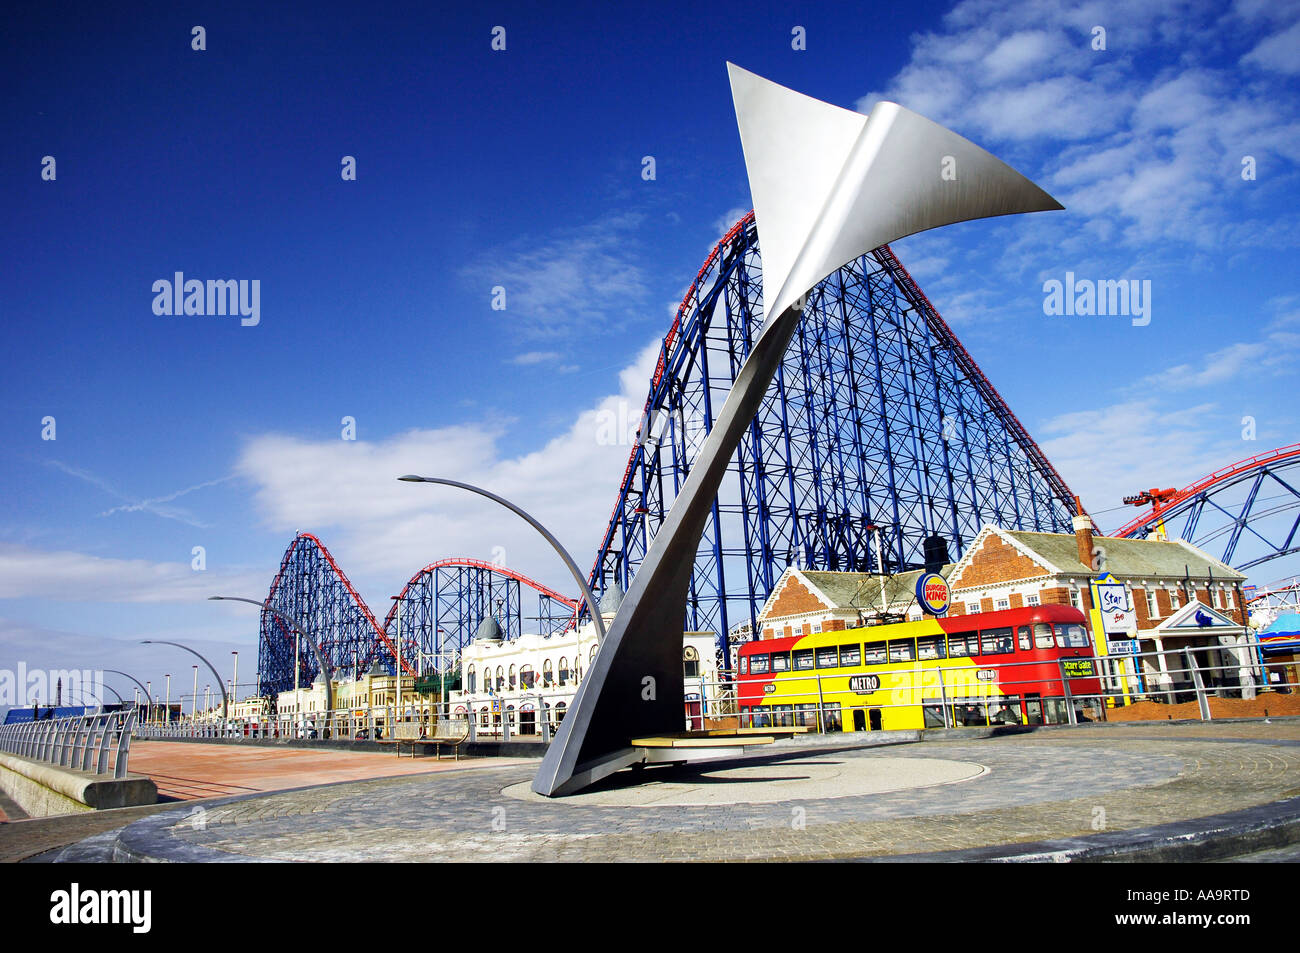 Queue de baleine sculpture abri du vent et un grand tour de montagnes russes à Blackpool Pleasure Beach amusement park Banque D'Images